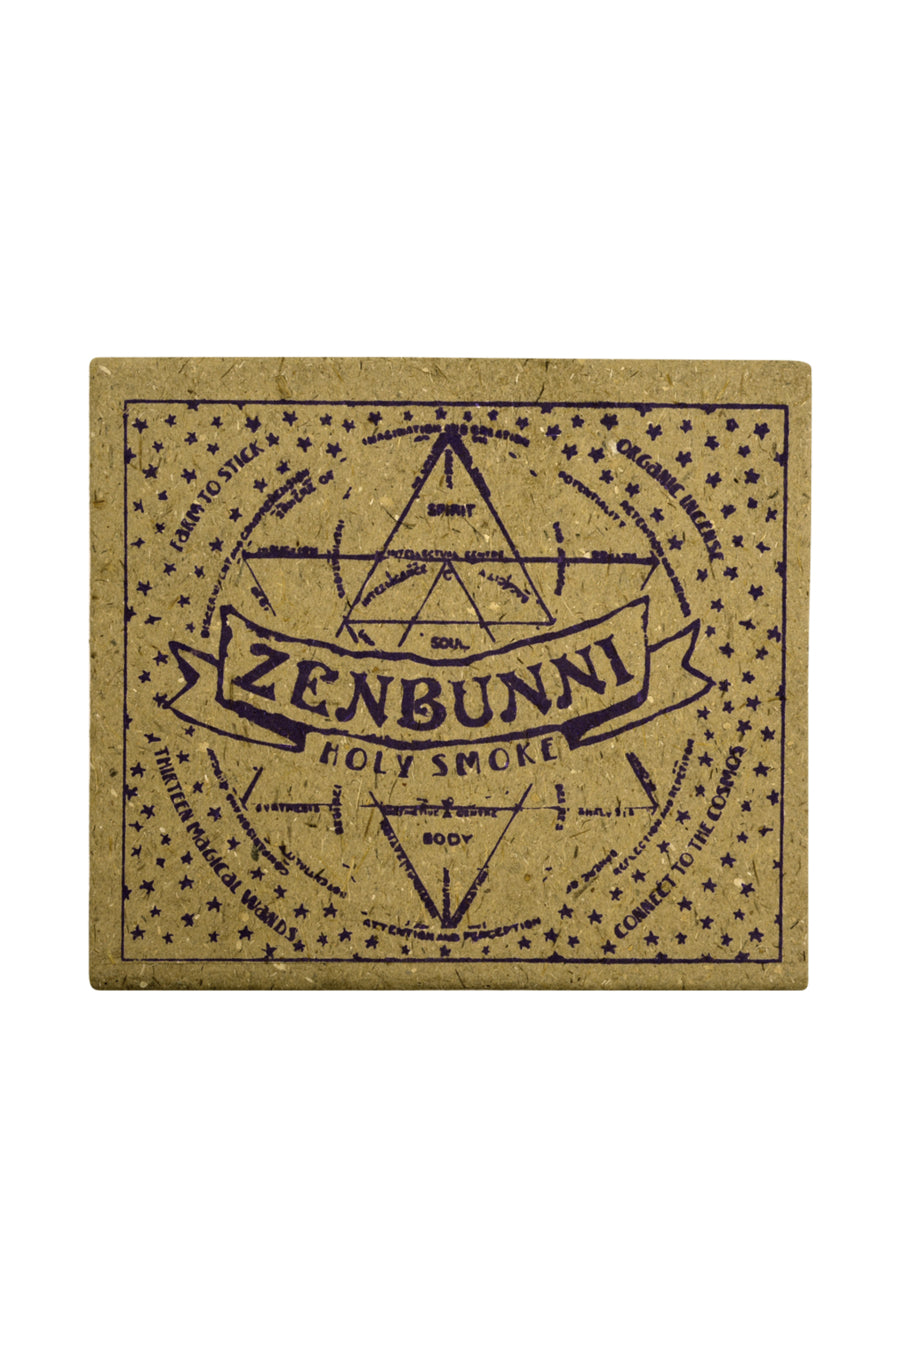 Zenbunni :: Holy Smokes Incense